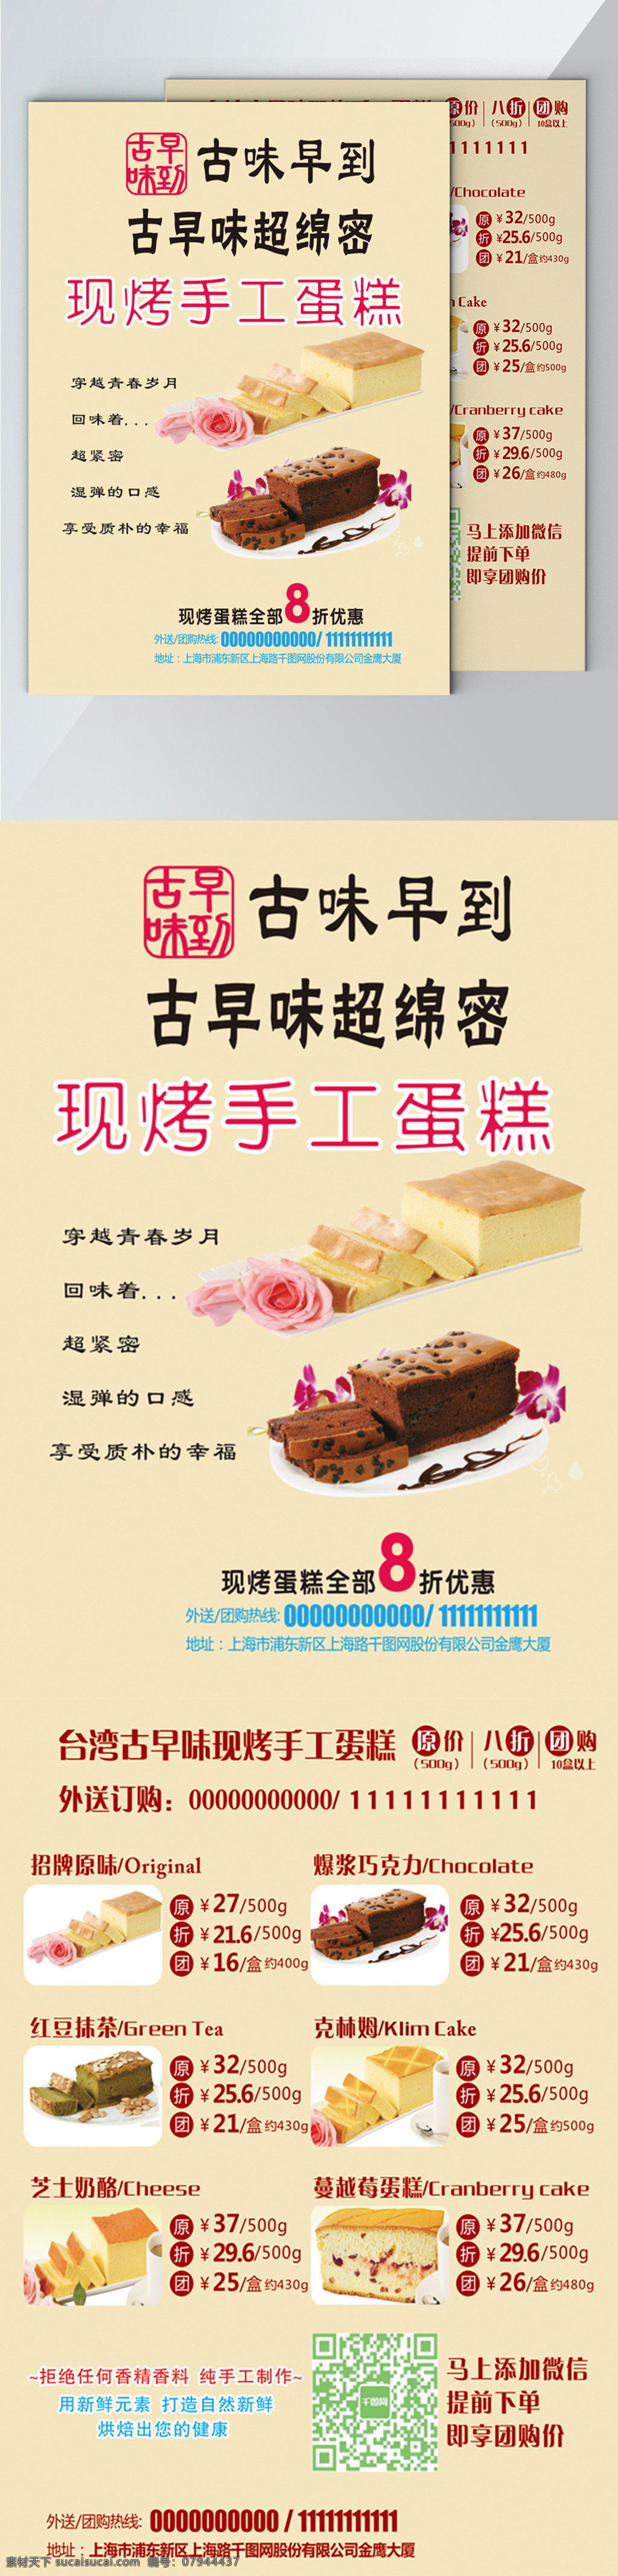 台湾 古 早 味 蛋糕 促销 宣传单 模板 促销宣传 蛋糕店